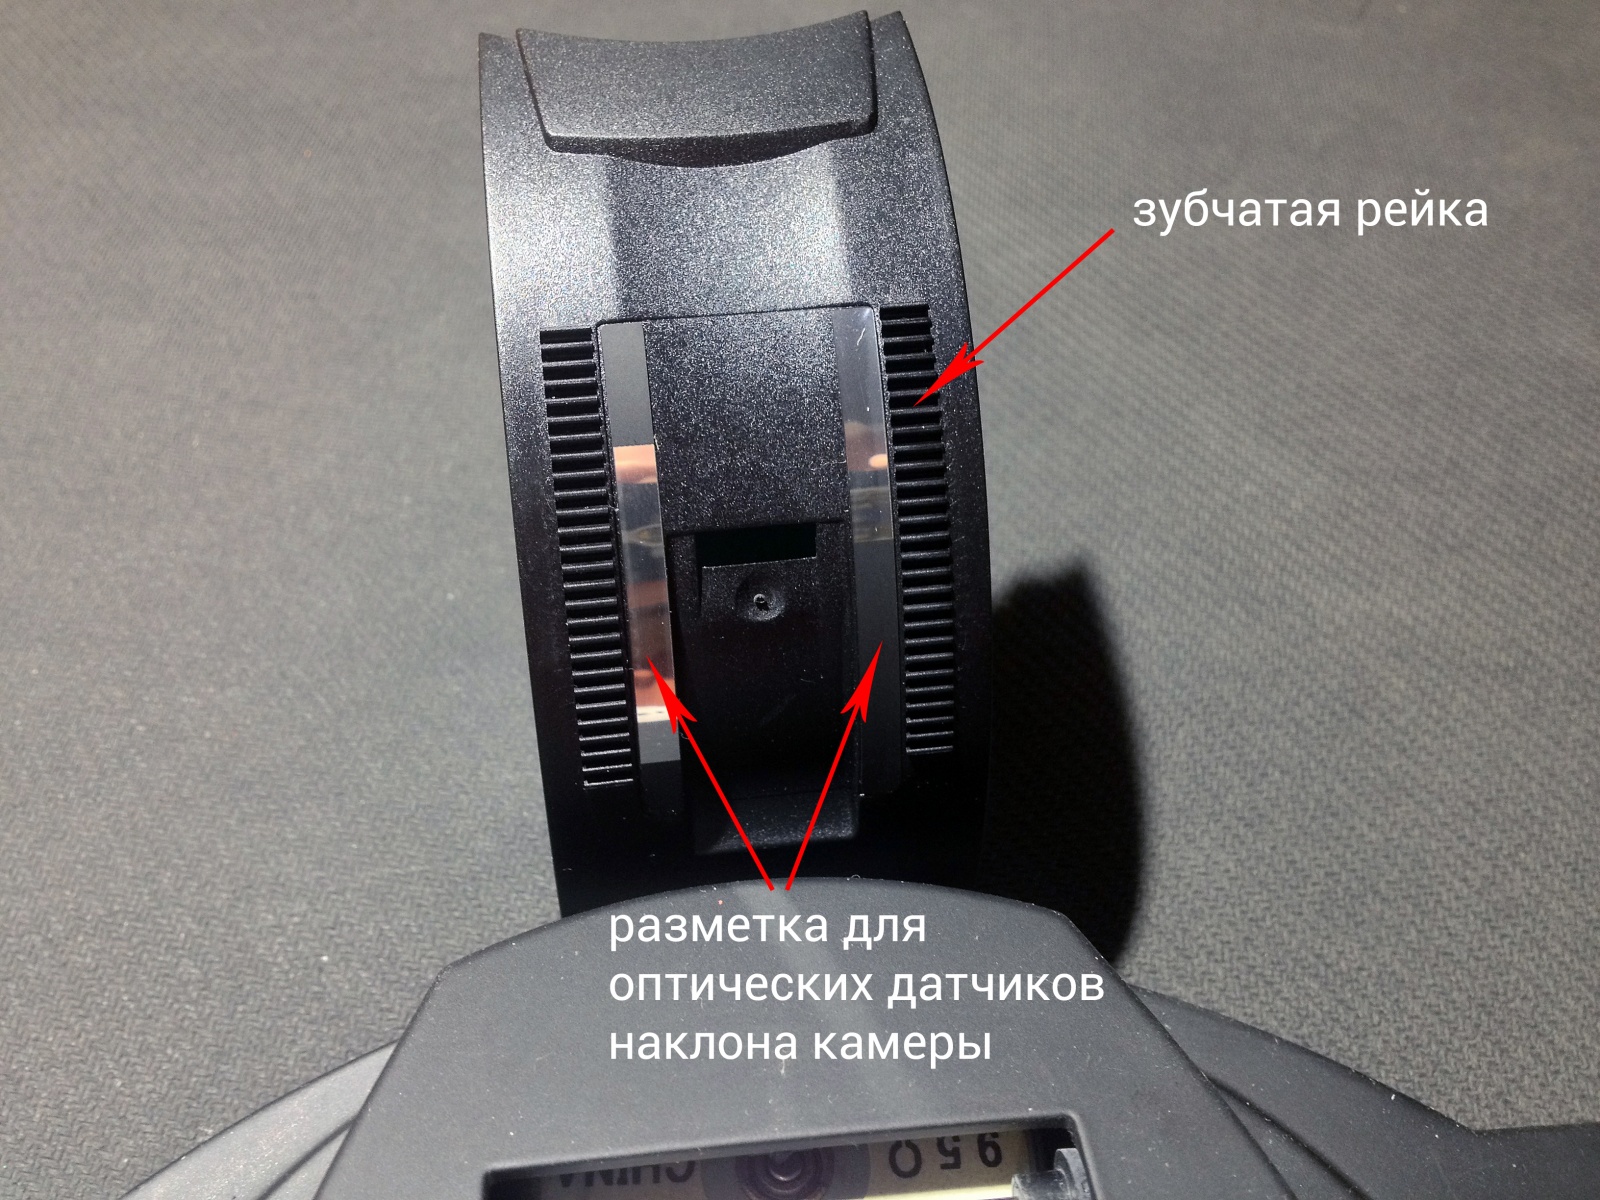 Разбор PTZ-камеры: что внутри и как это работает - 7